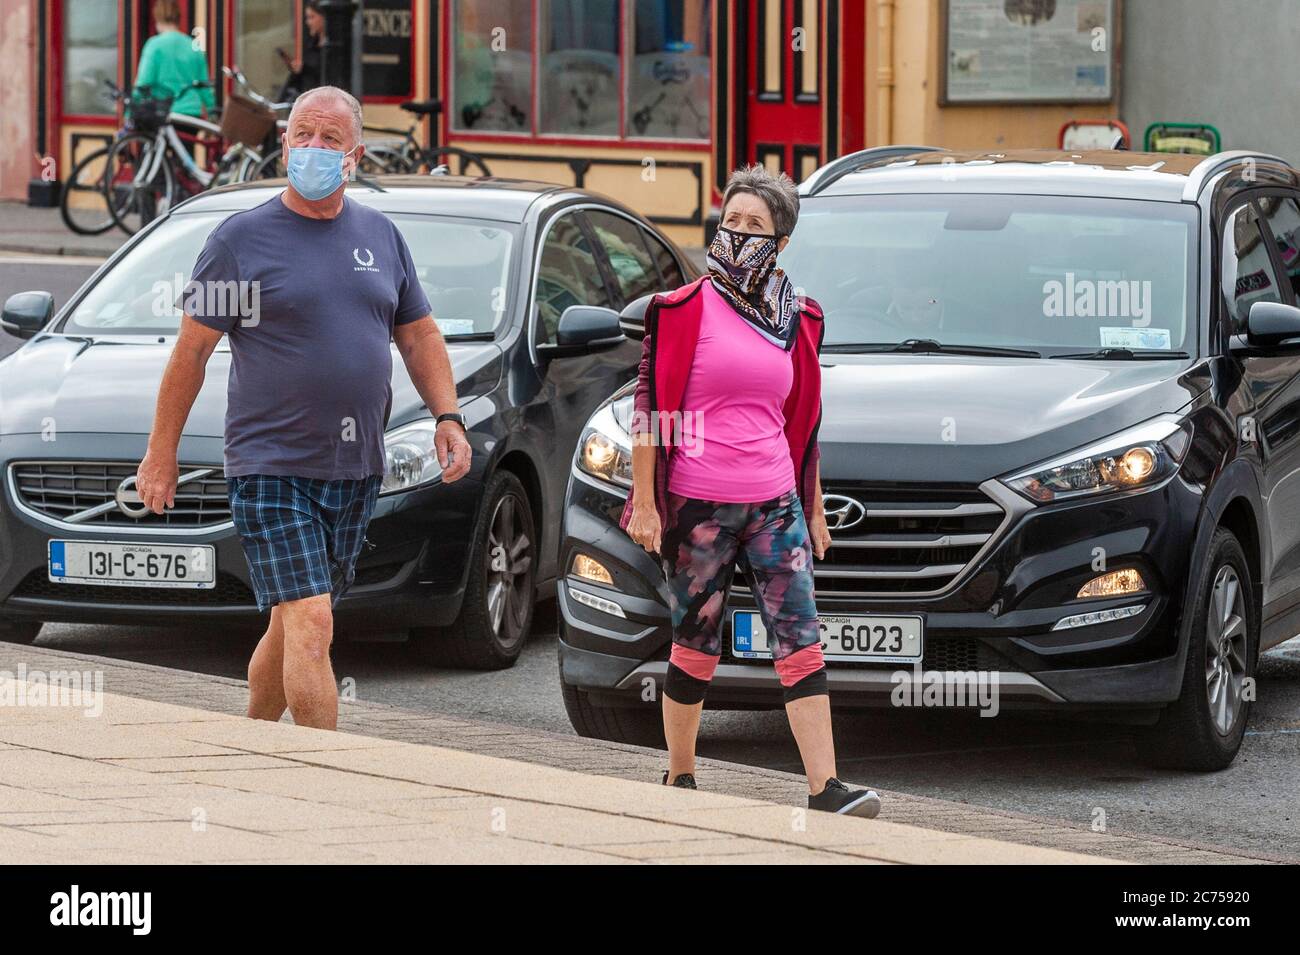 Bantry, West Cork, Irlande. 14 juillet 2020. Les gens portent des masques à Bantry pour se protéger contre Covid-19. Crédit : AG News/Alay Live News Banque D'Images